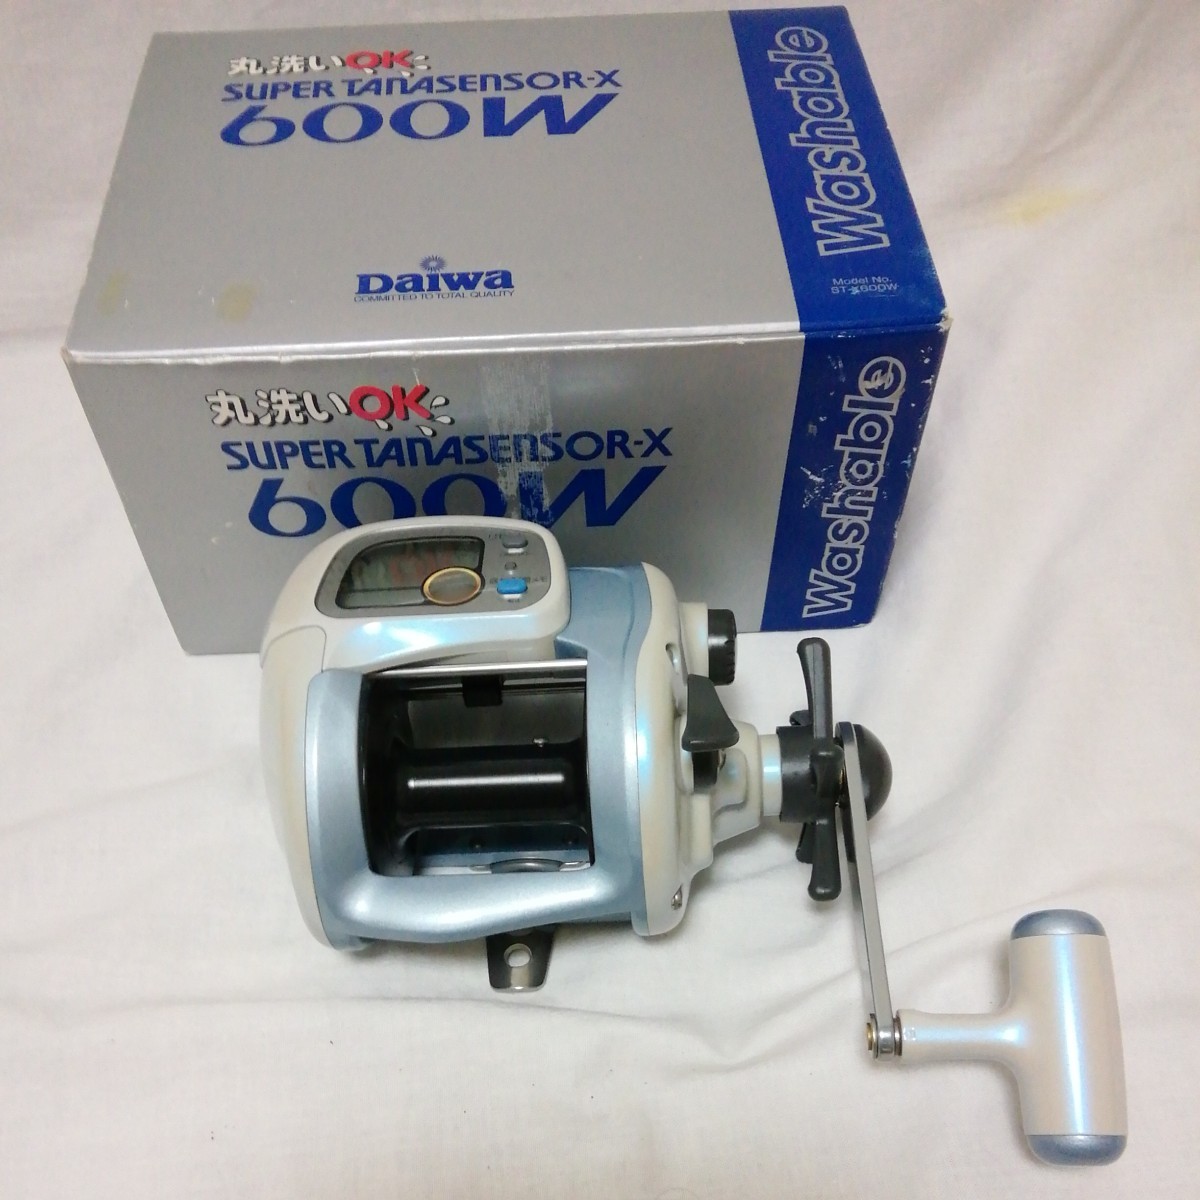  Daiwa super tana сенсор X 600W[ включая доставку цена ]